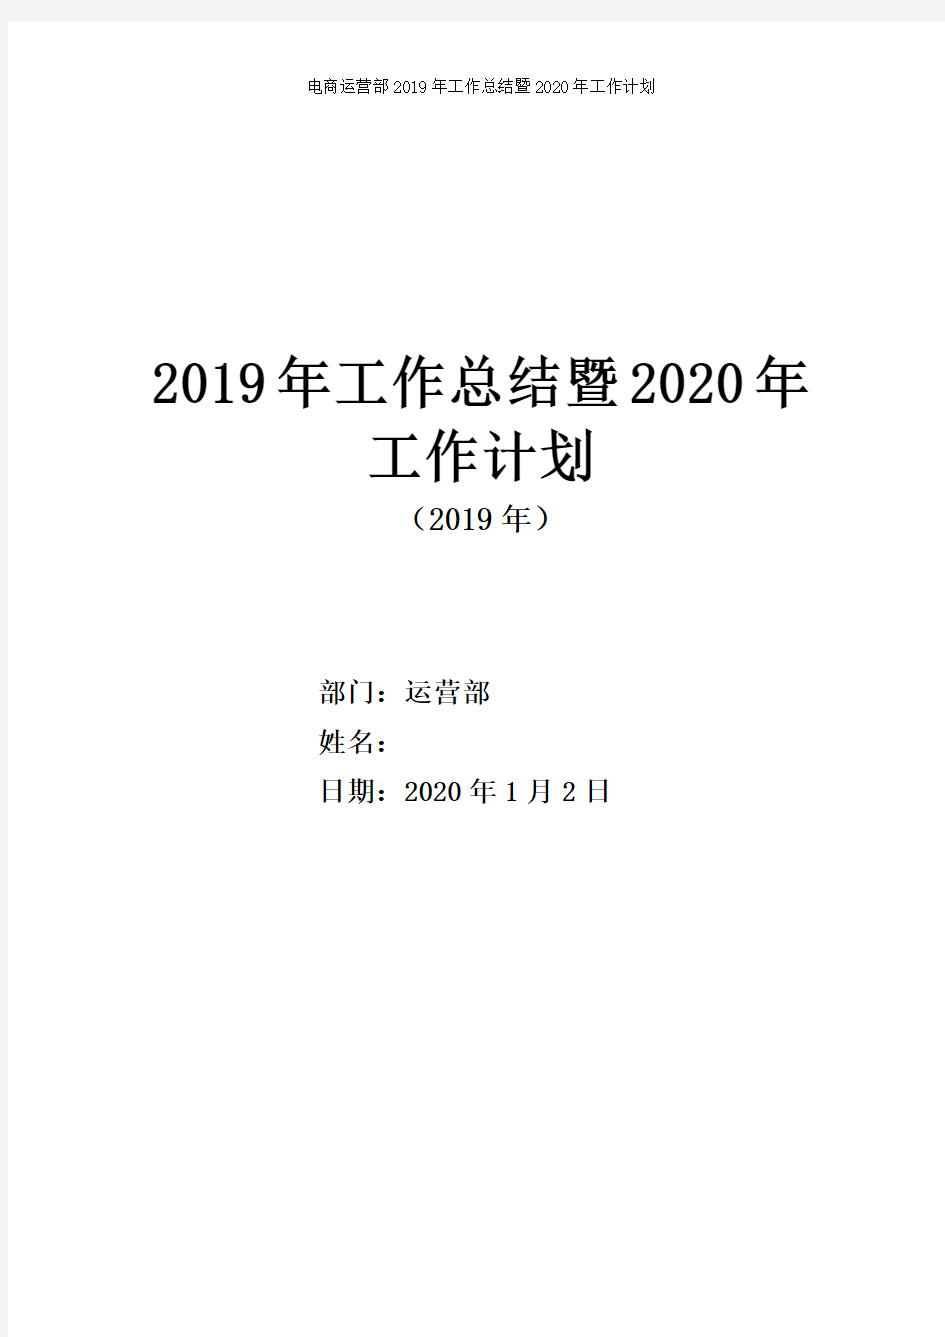 电商运营部2019年工作总结及2020年工作计划